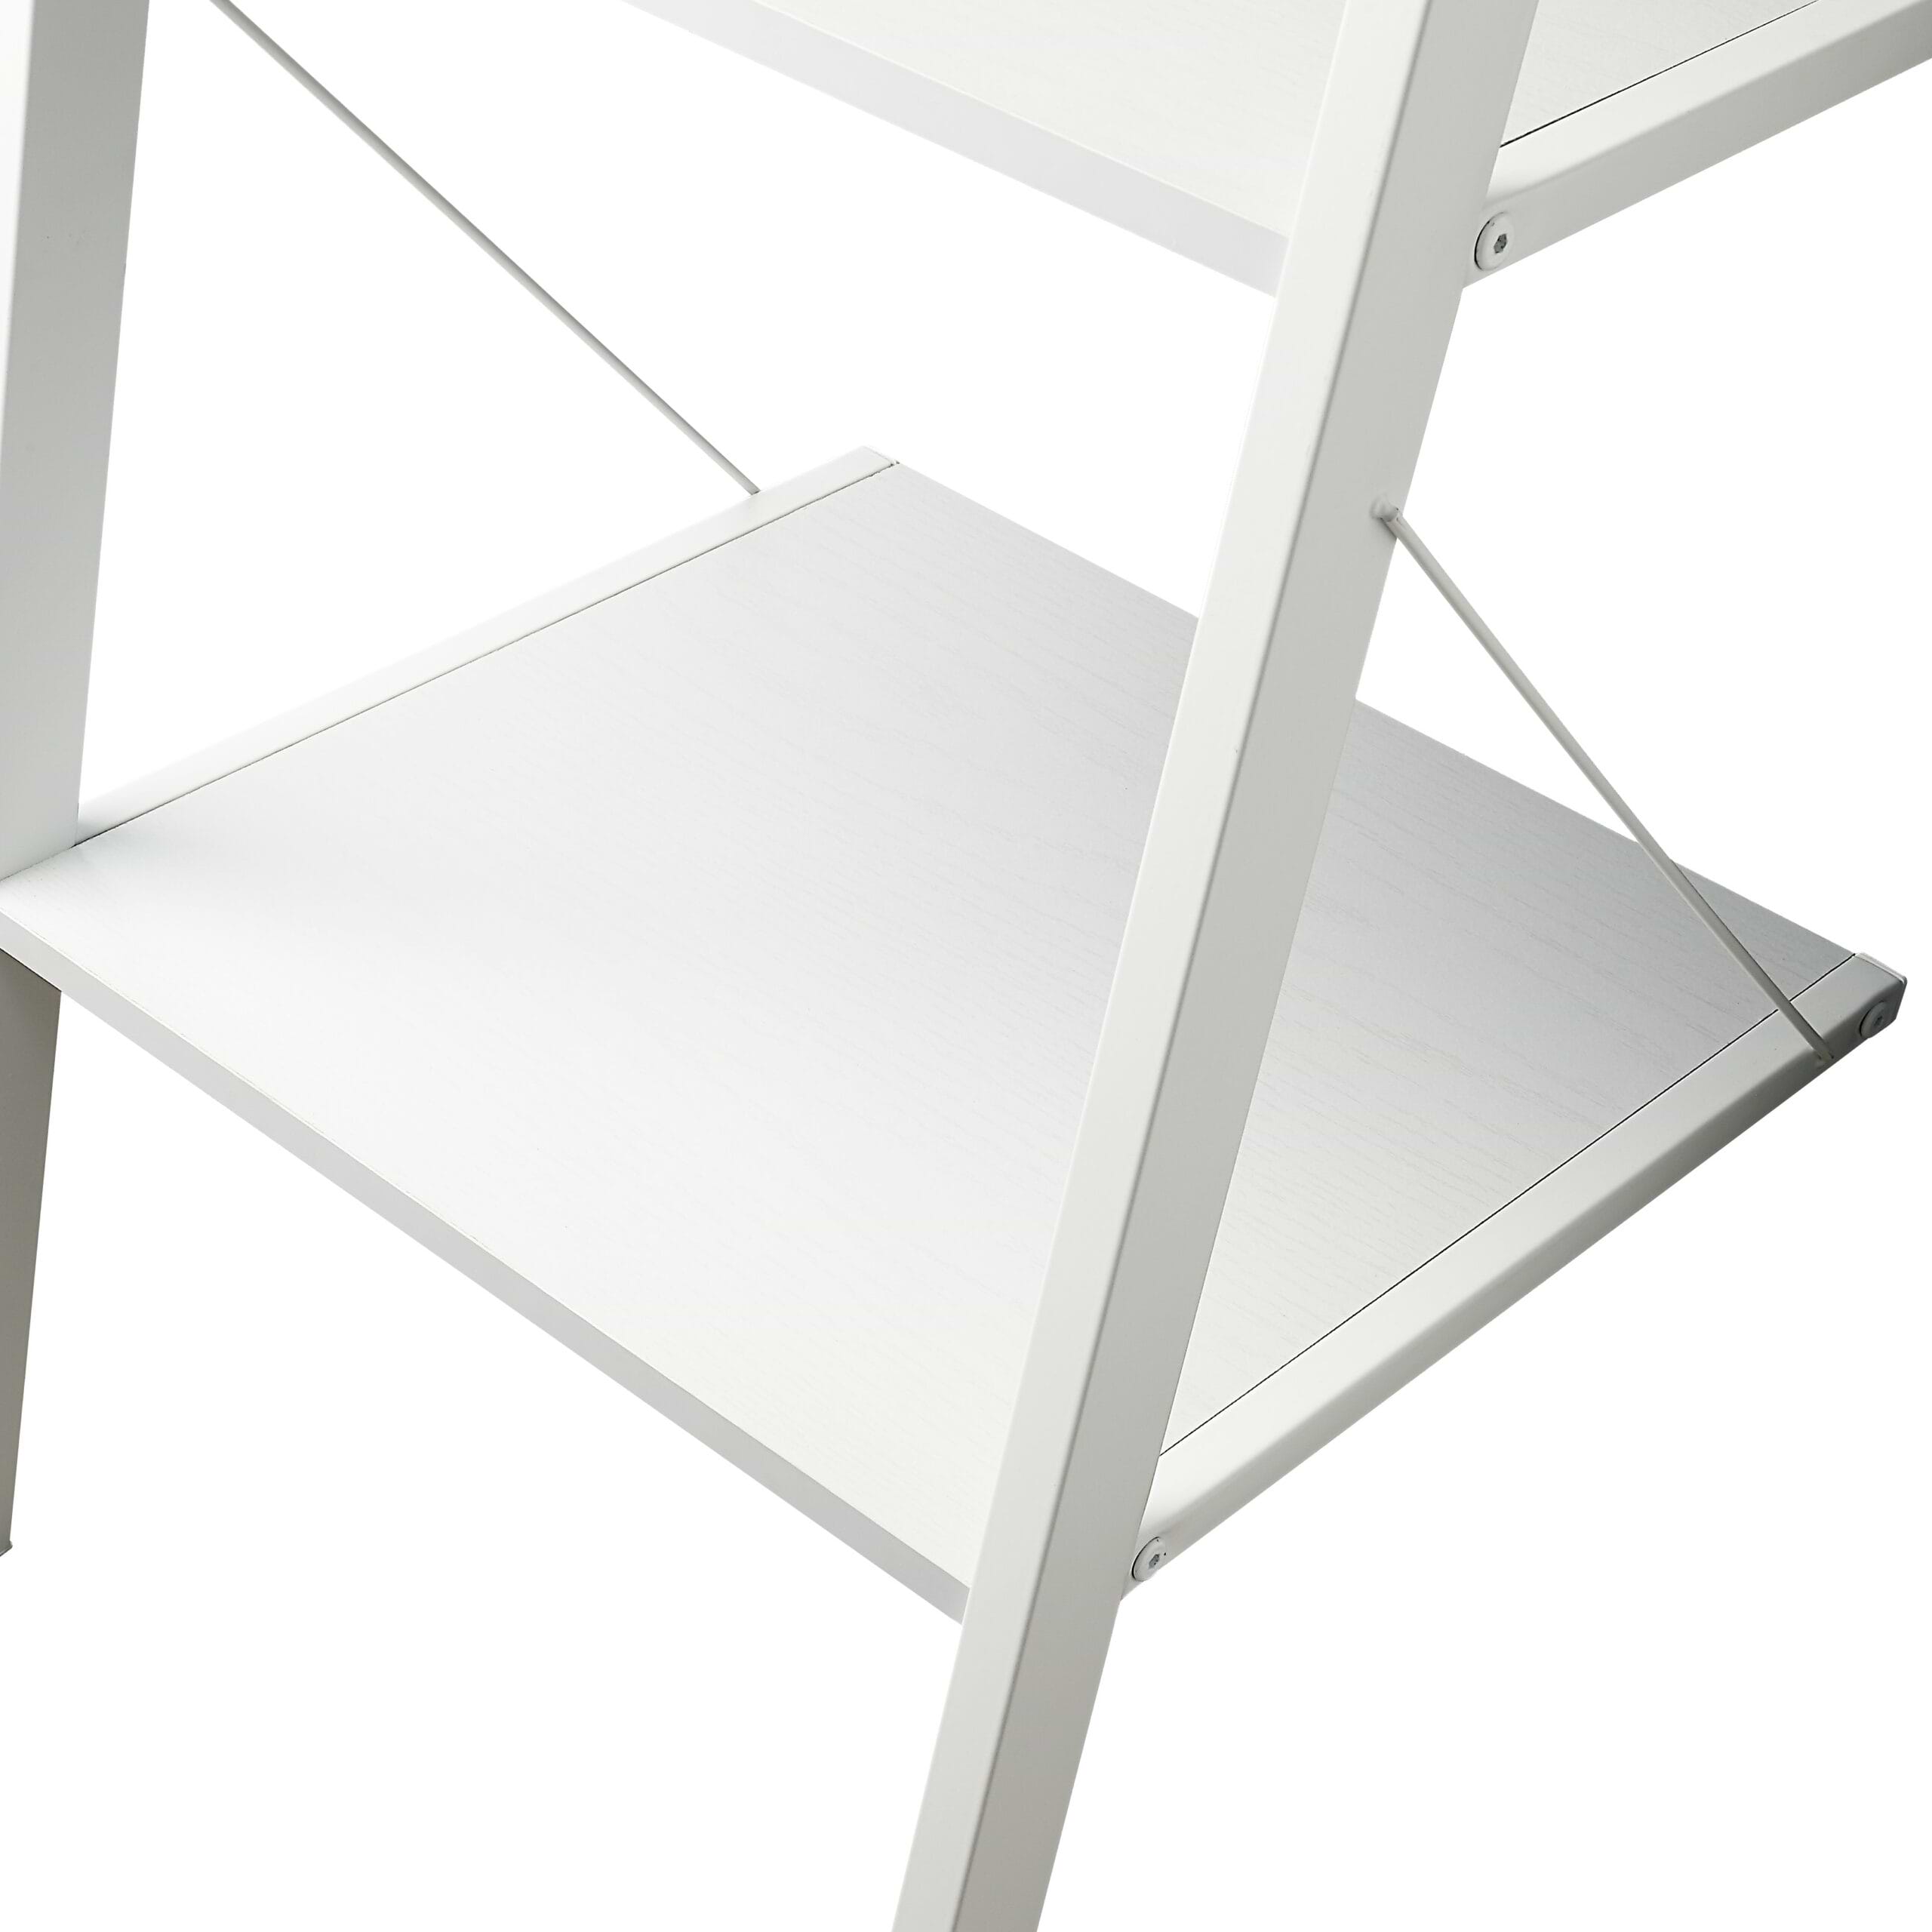 סולם מדפים מבית Mydesign בצבע לבן